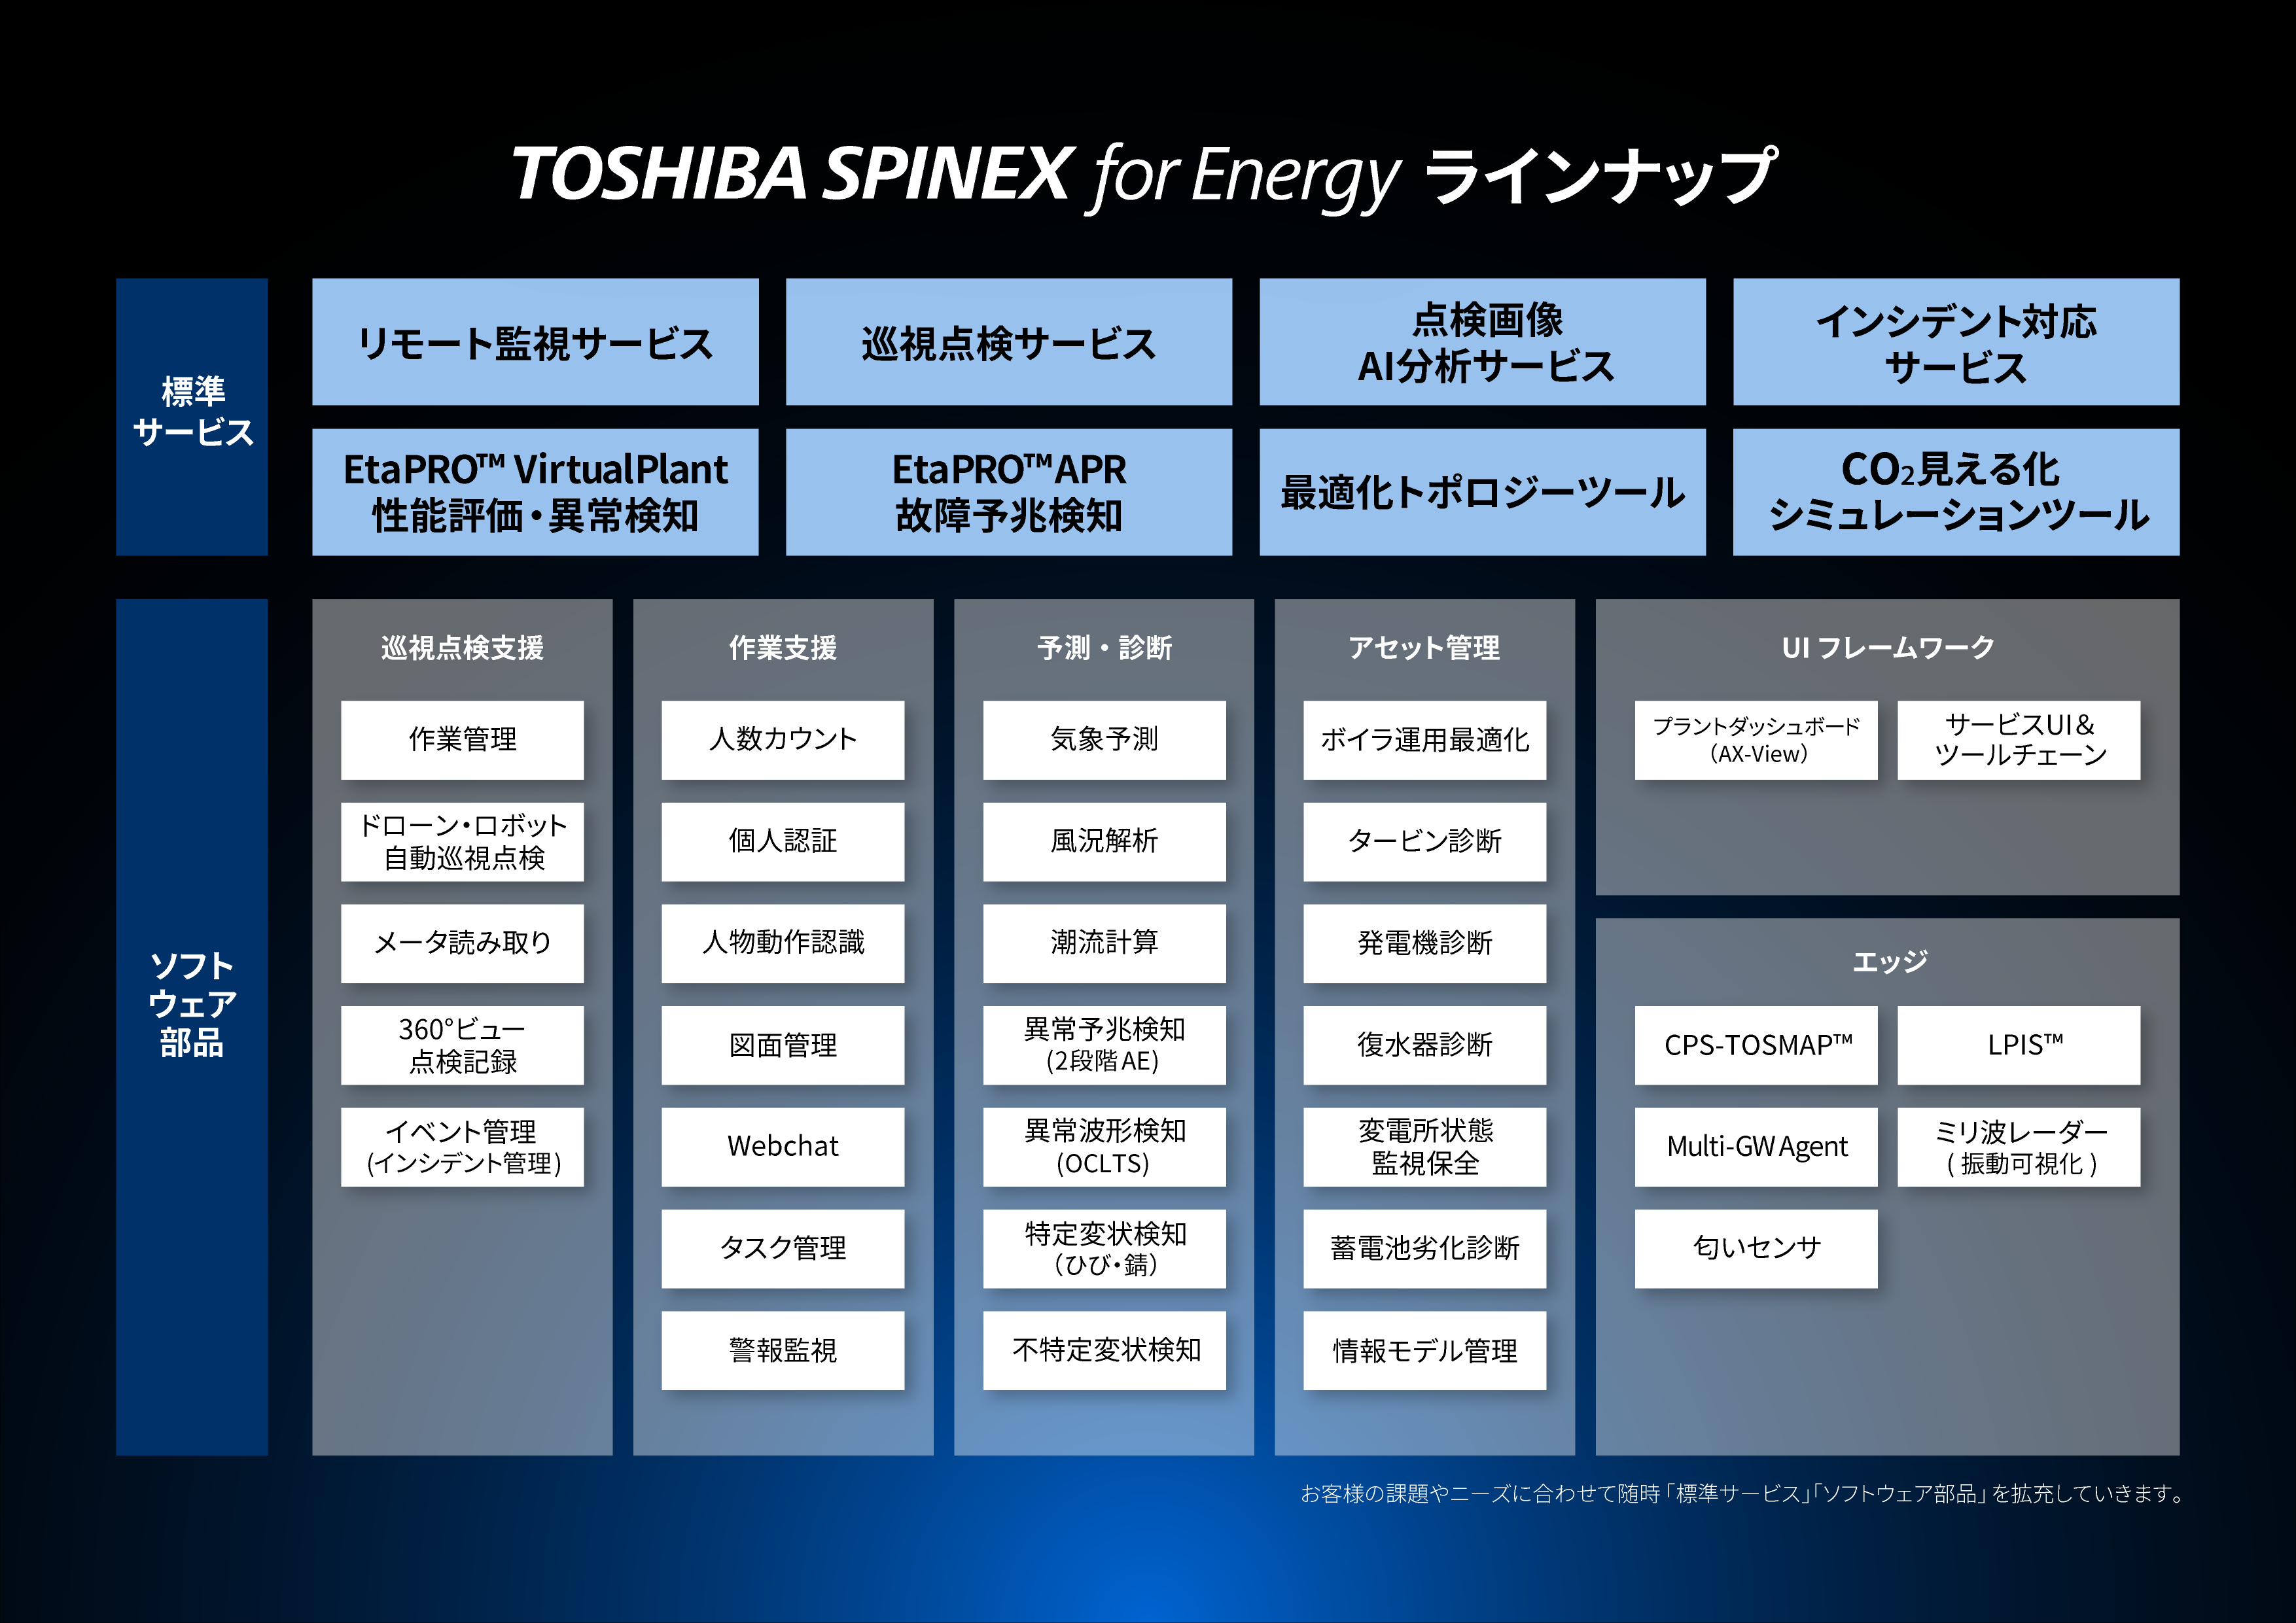 エネルギー関連課題を解決するTOSHIBA SPINEX for Energyには、最新の開発成果が随時反映されていく